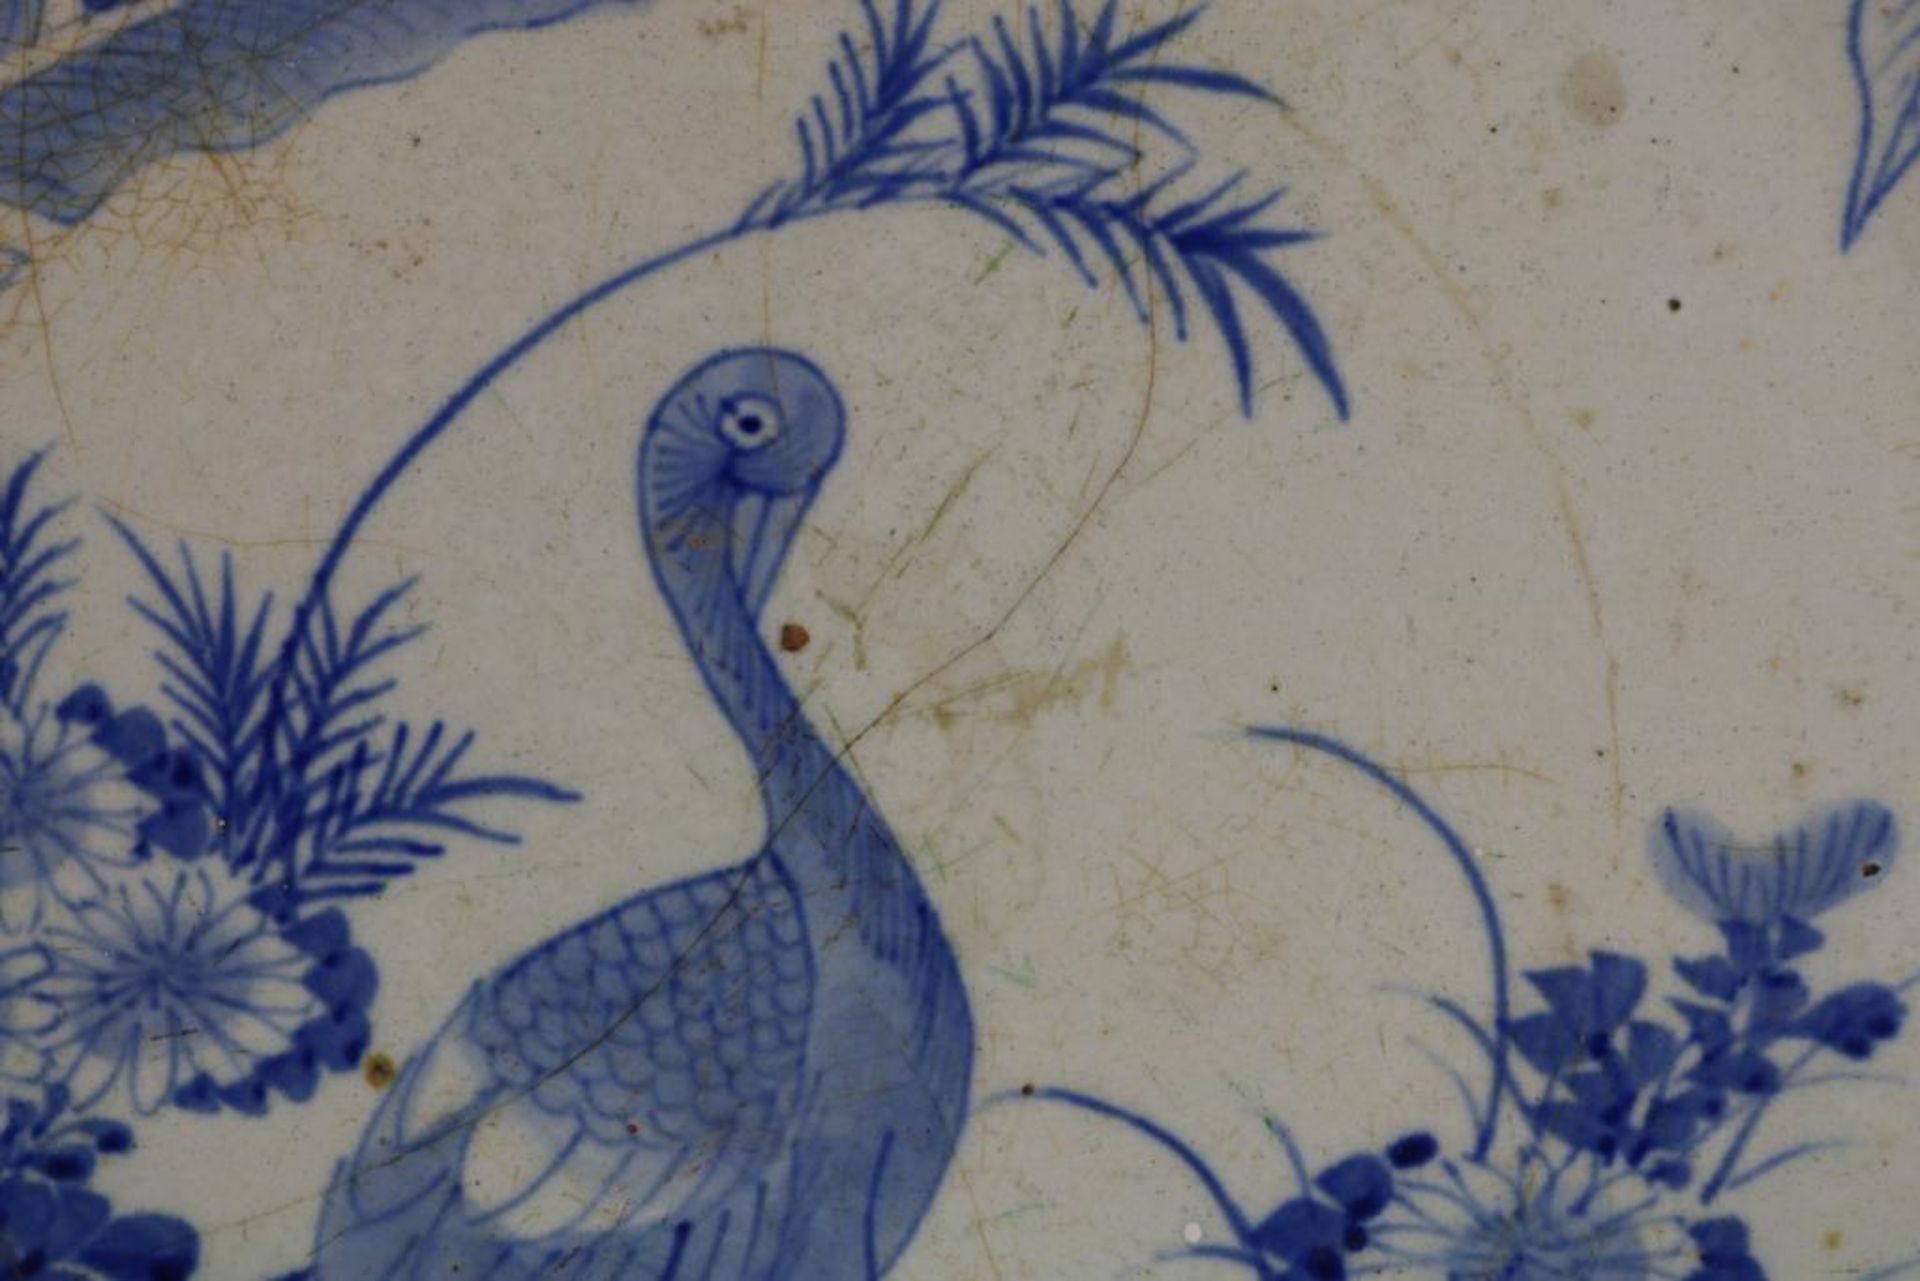 Porseleinen schotel met decor van kraanvogel bij rotspartij, Japan Meiji periode ca. 1900, diam. - Bild 2 aus 3